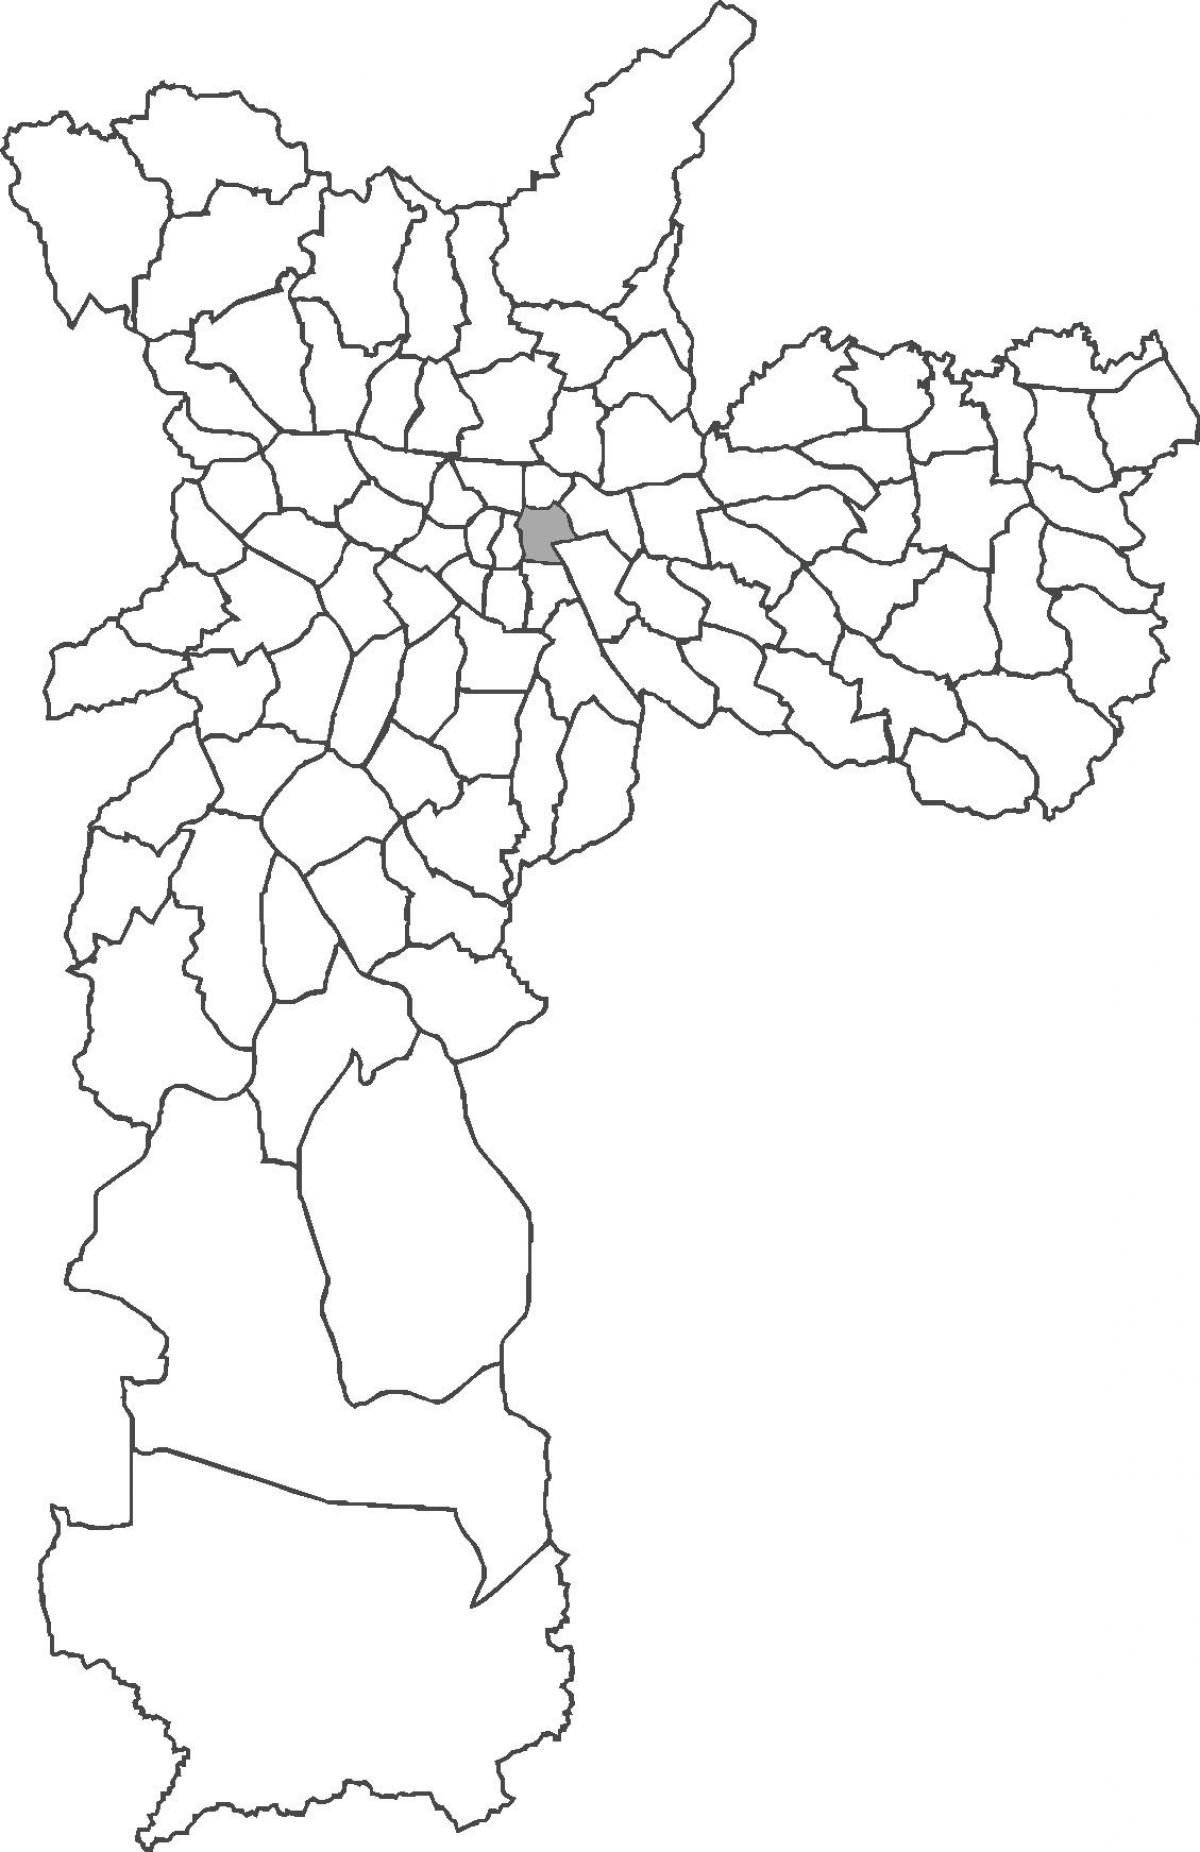 Peta dari Bras kabupaten